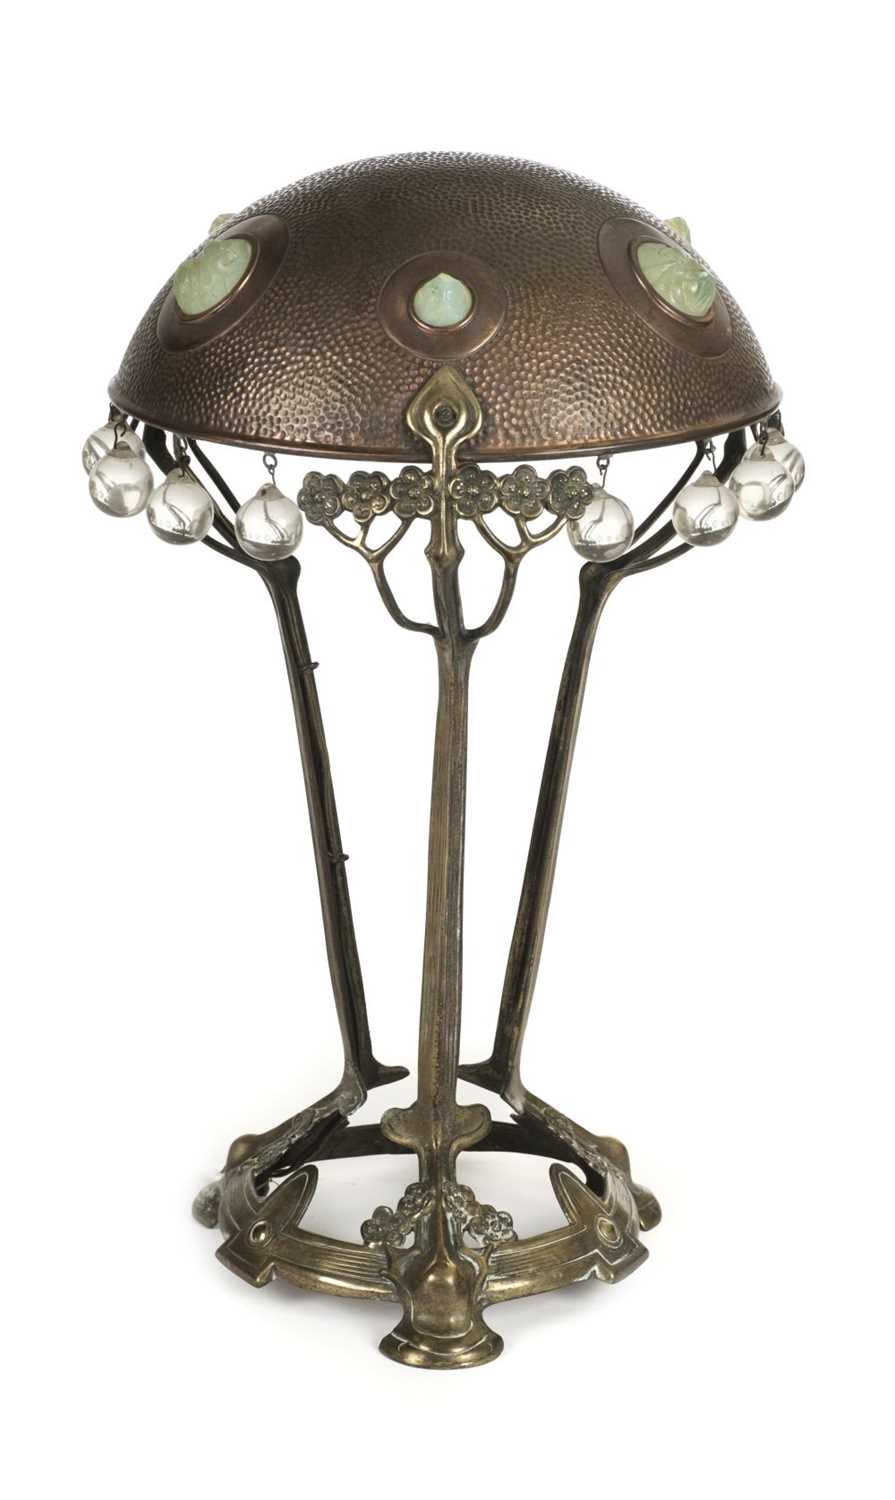 Lot 35 - Table Lamp. A Continental Art Nouveau table lamp c.1890